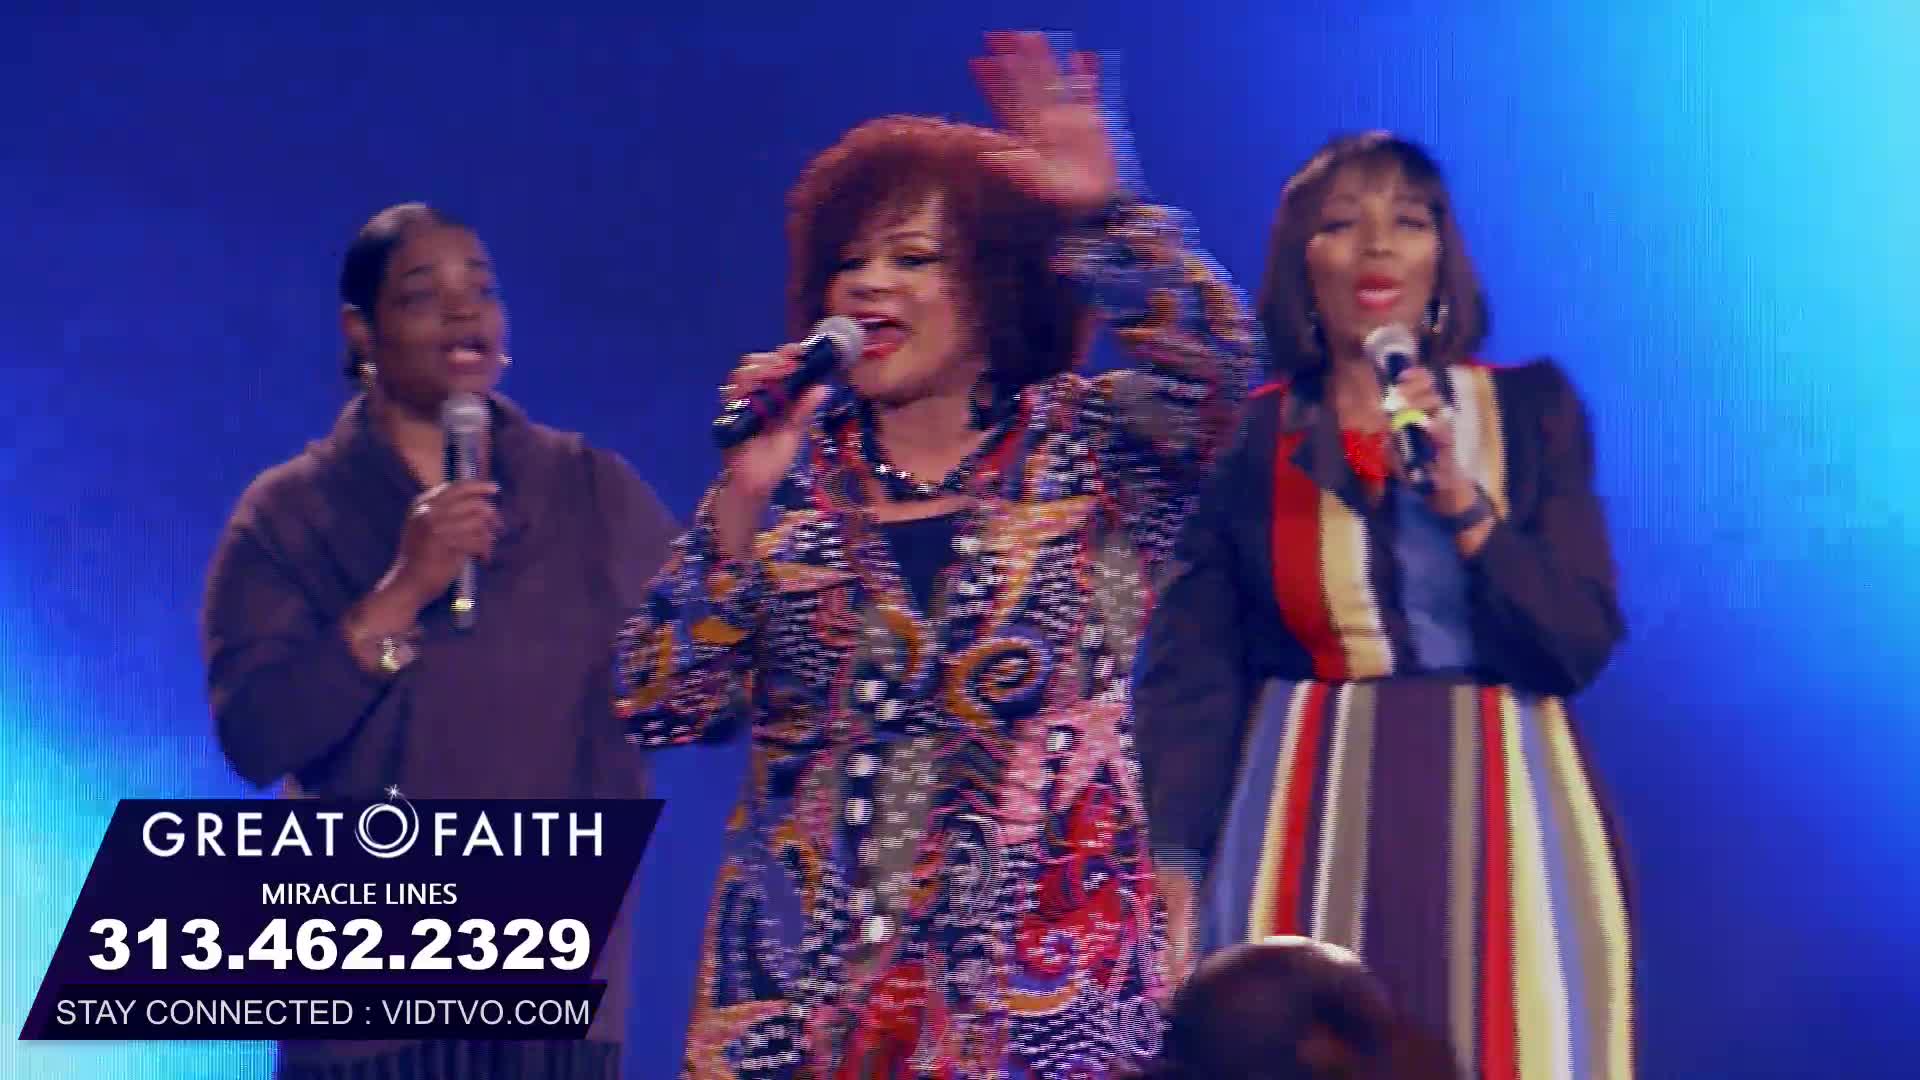 Great Faith Detroit on 18-Feb-23-16:55:03